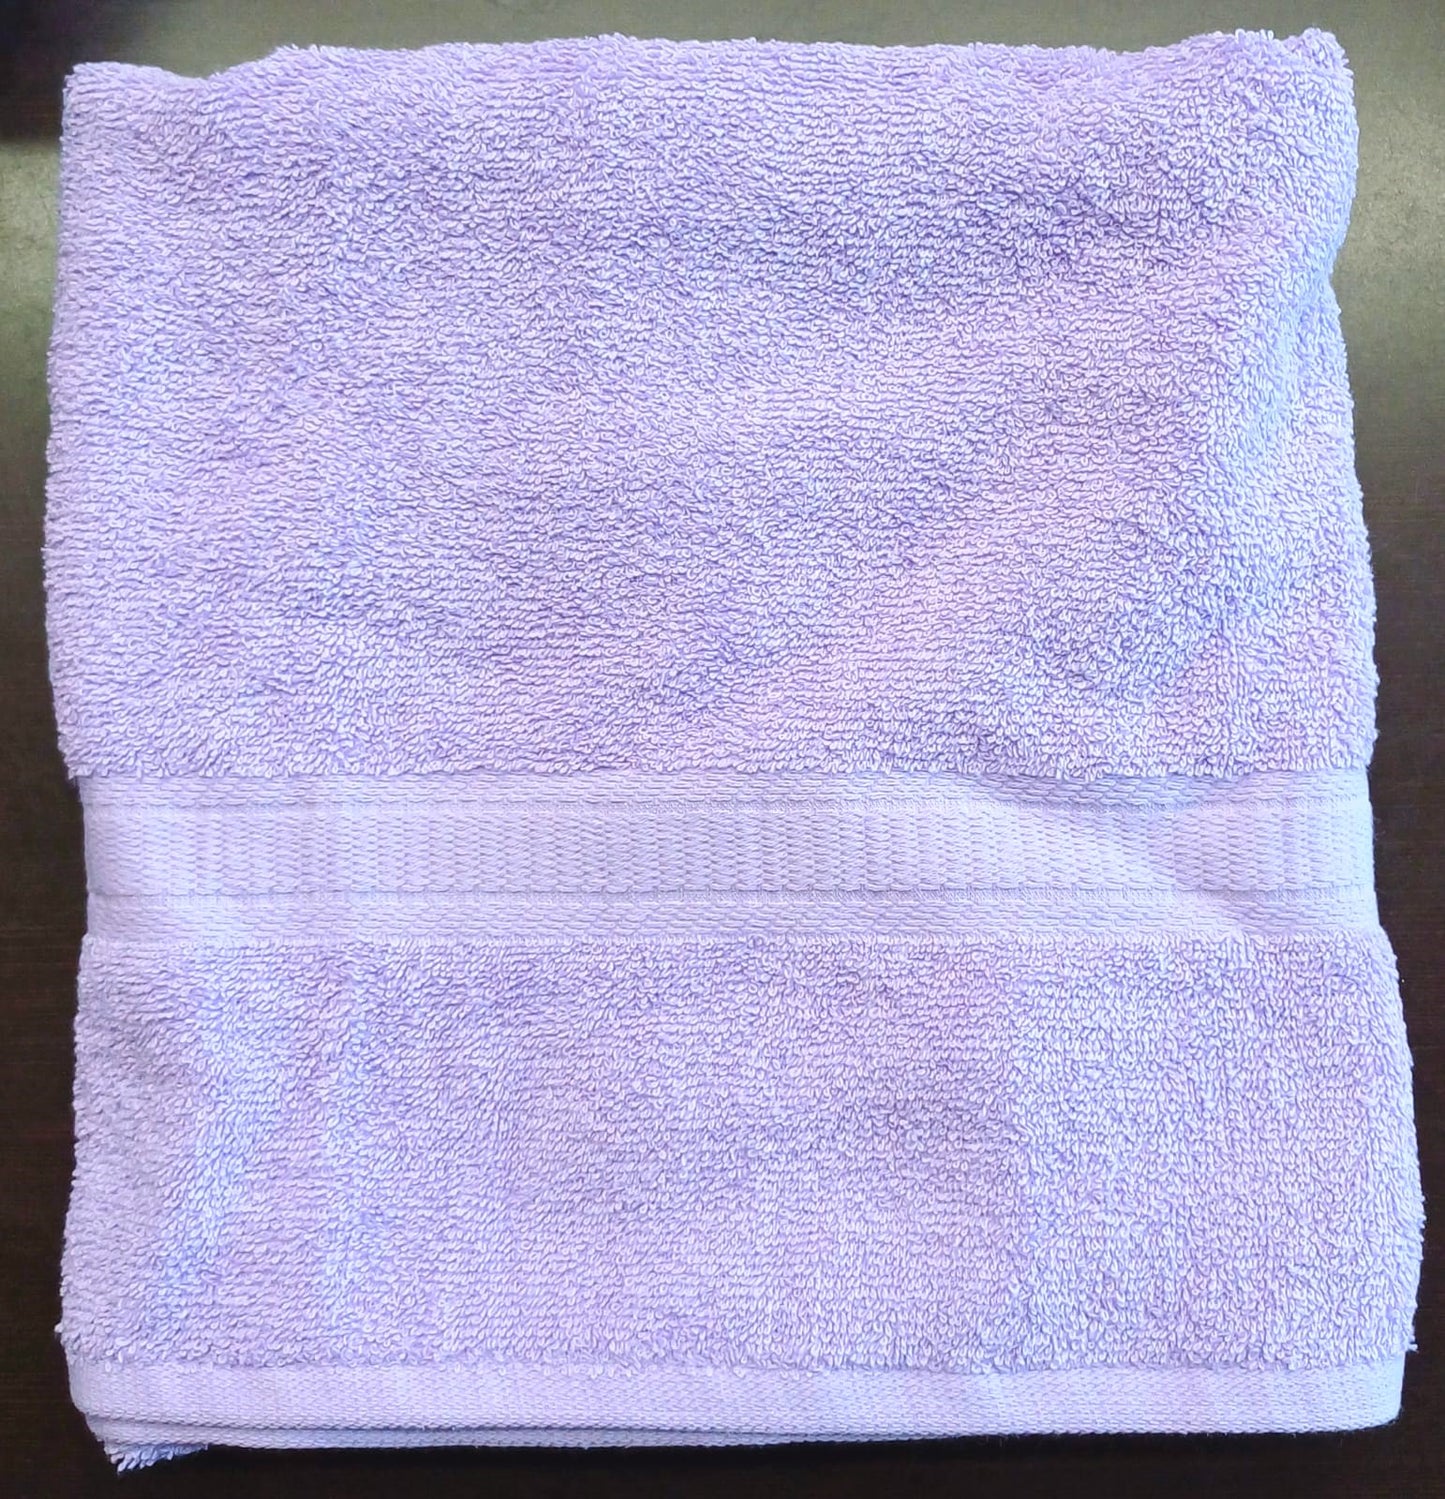 Solid Bath Towels - 27" x 52"